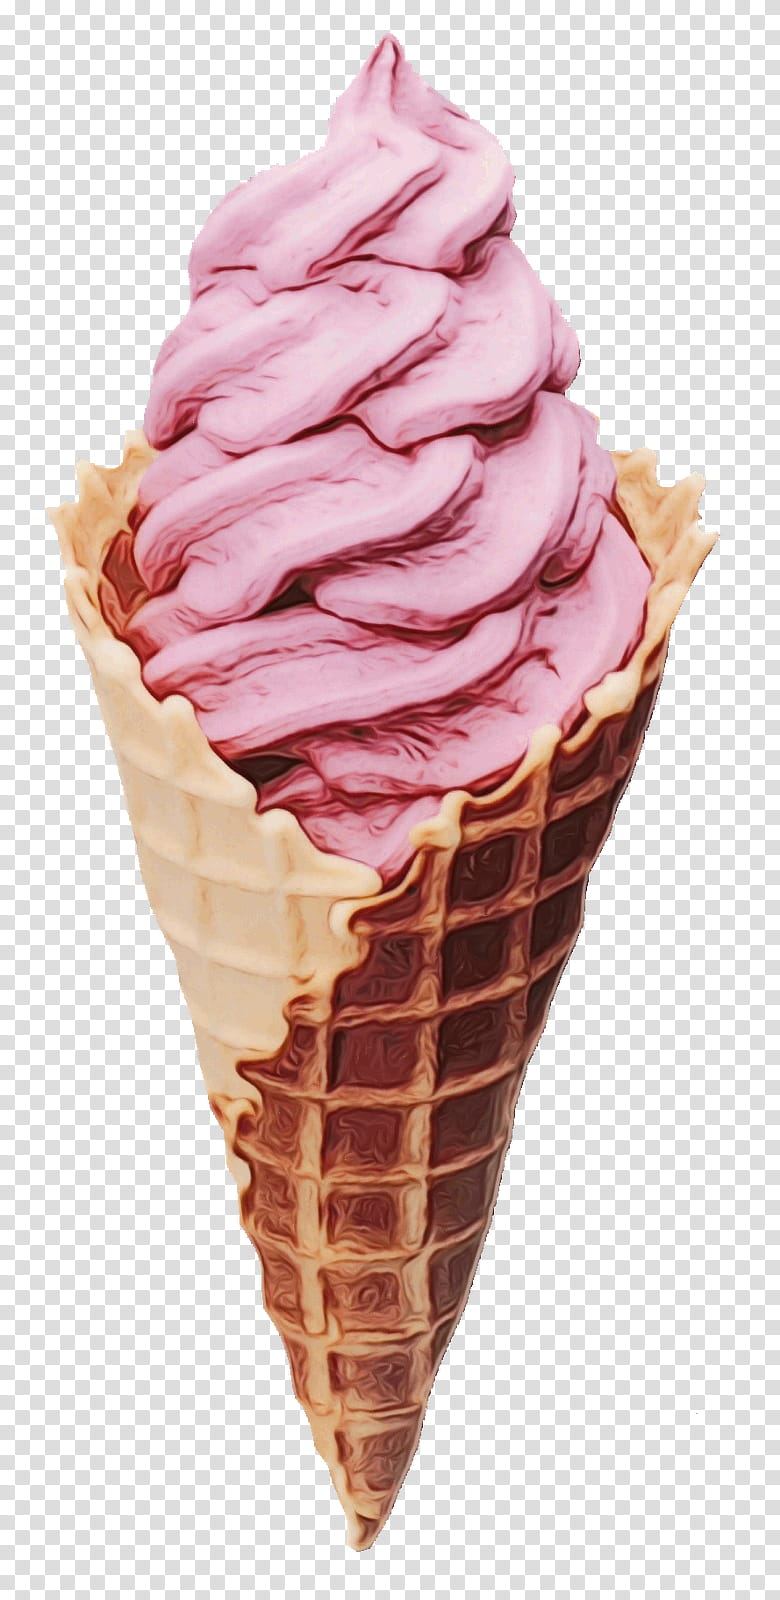 Ice Cream Cone, Ice Cream Cones, Sundae, Milkshake, Frozen Yogurt, Smoothie, Ice Cream Makers, Chocolate Ice Cream transparent background PNG clipart